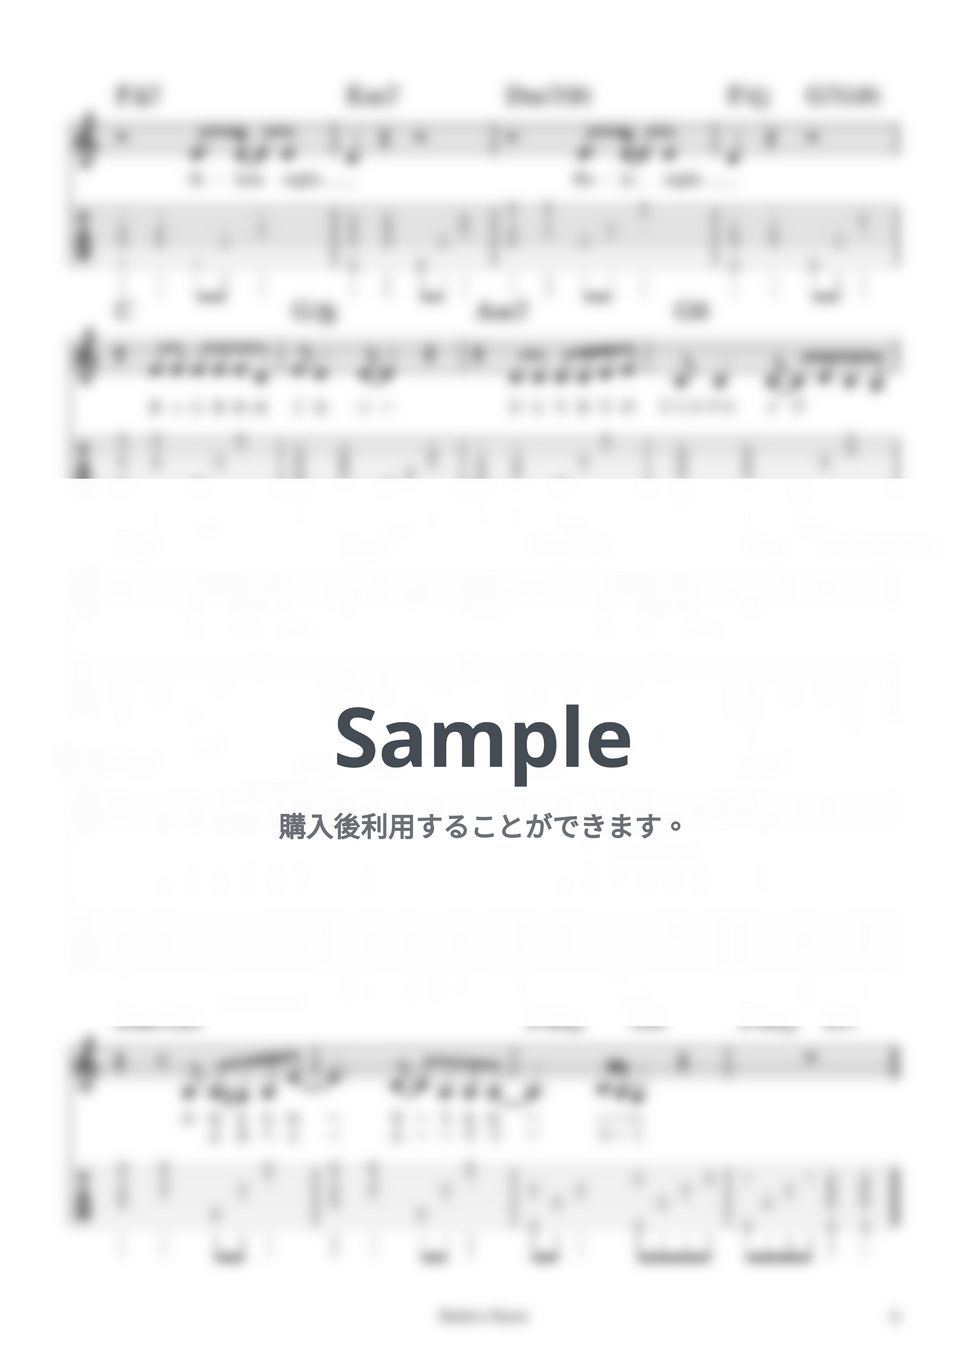 山下達郎 - クリスマス・イブ / Key＝C (ギター伴奏・弾き語り（女性Key）) by Sinho